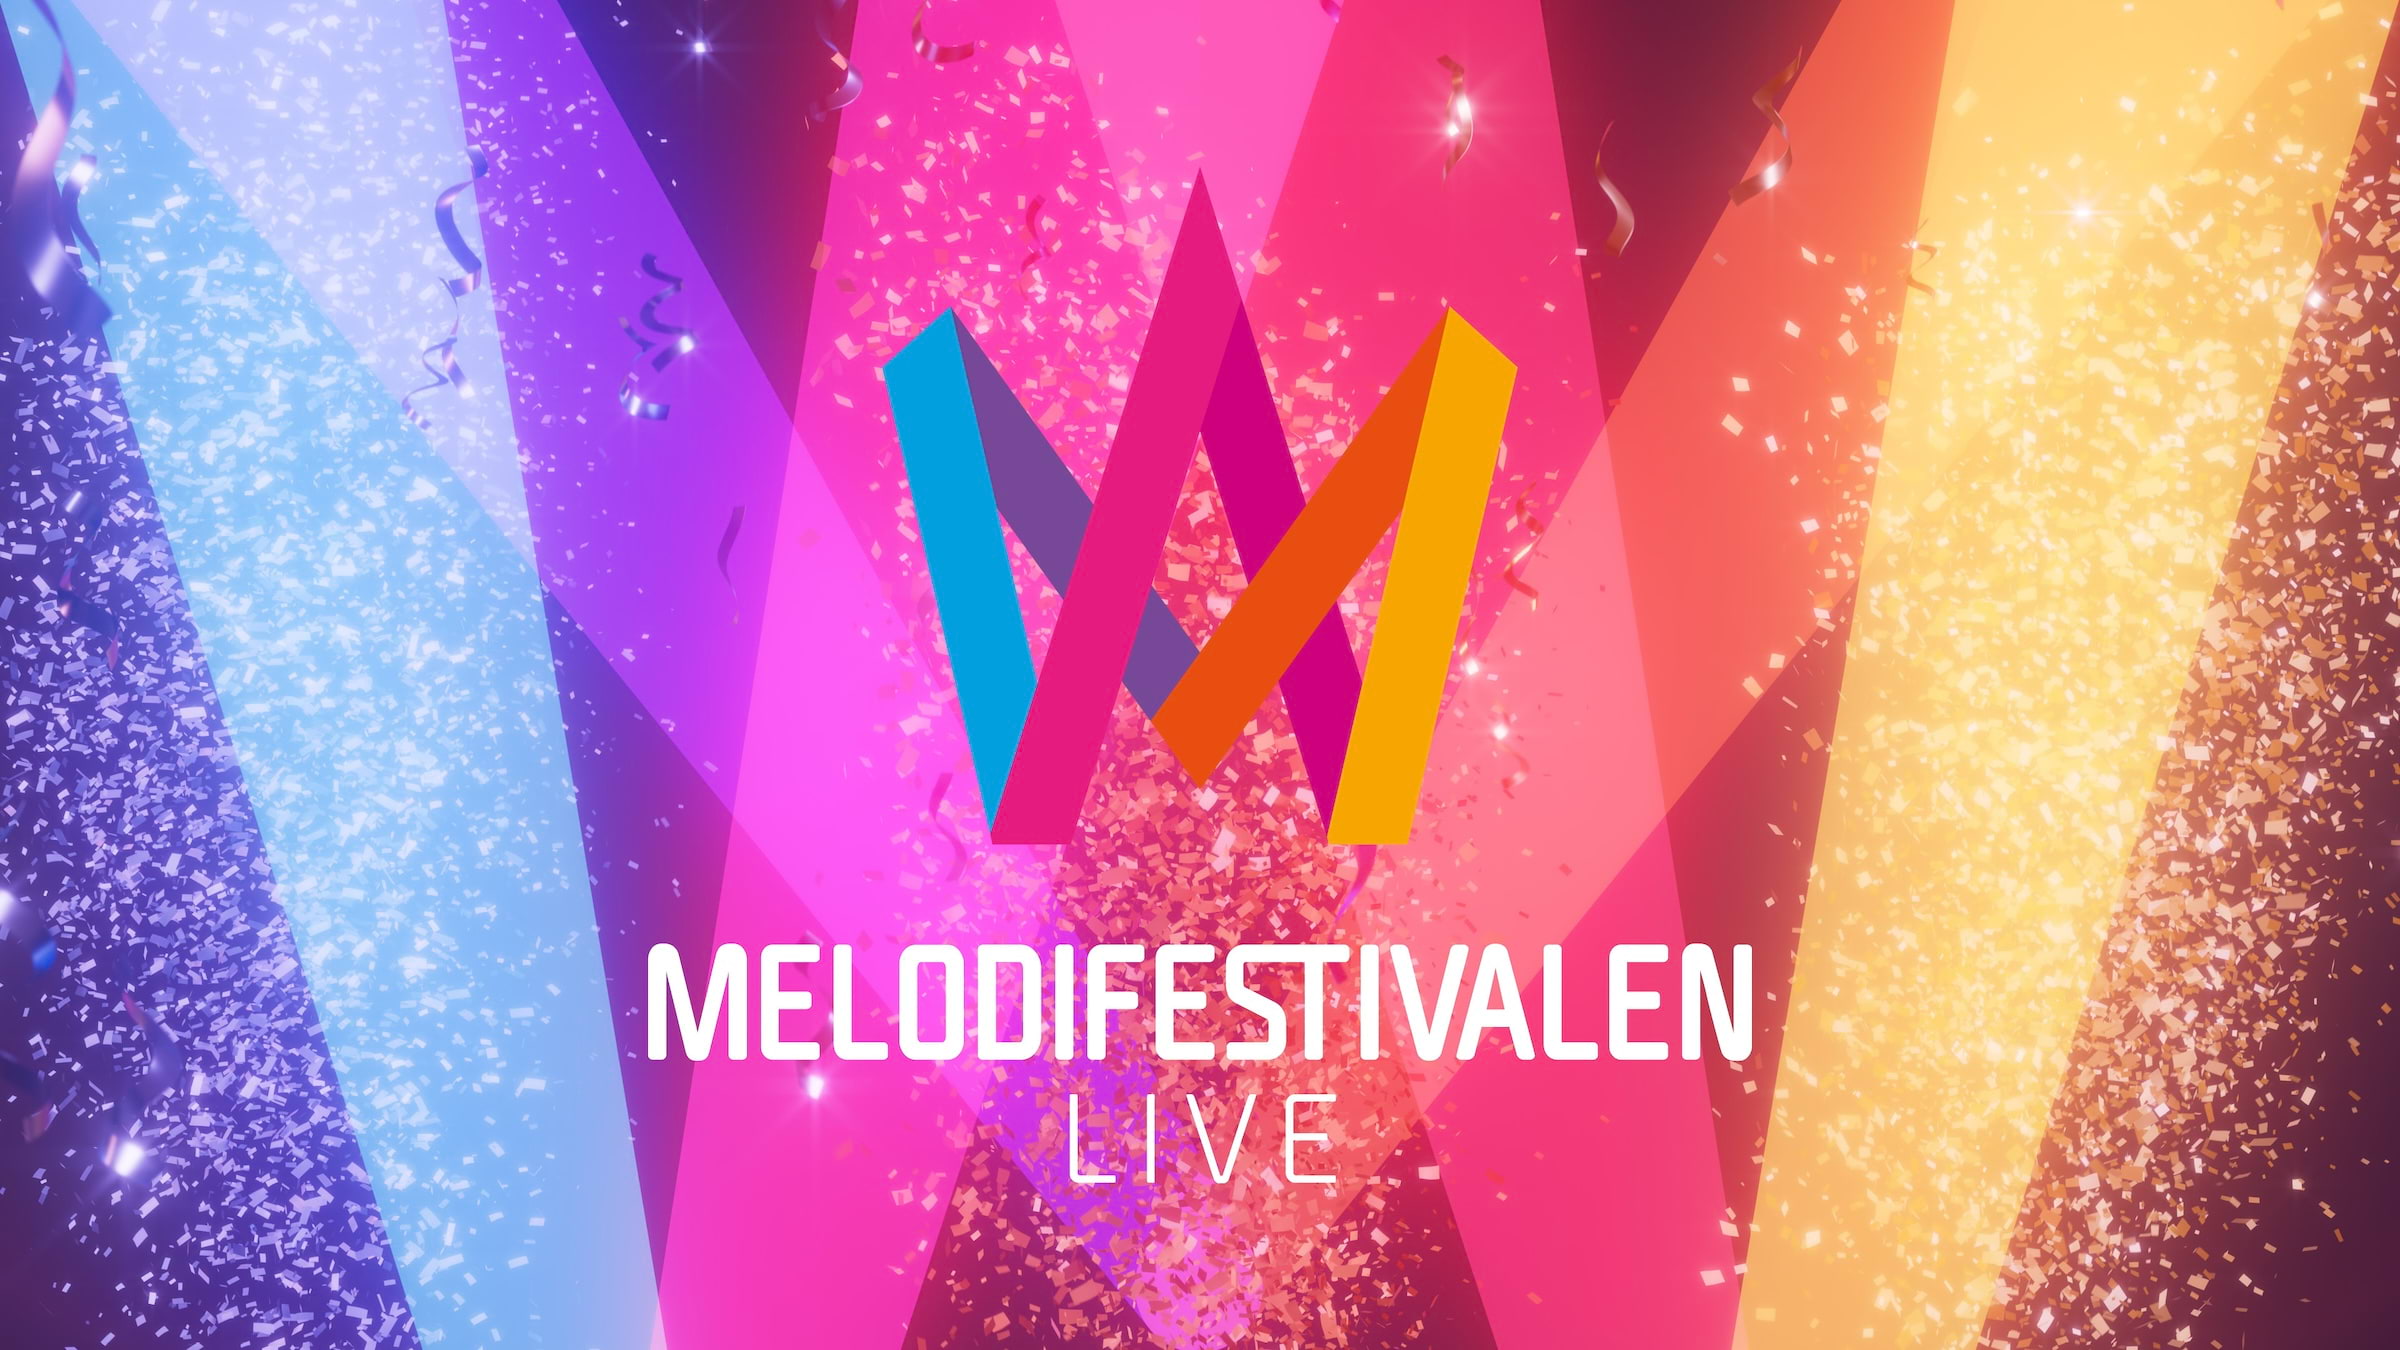 Foto: Melodifestivalen/pressbild